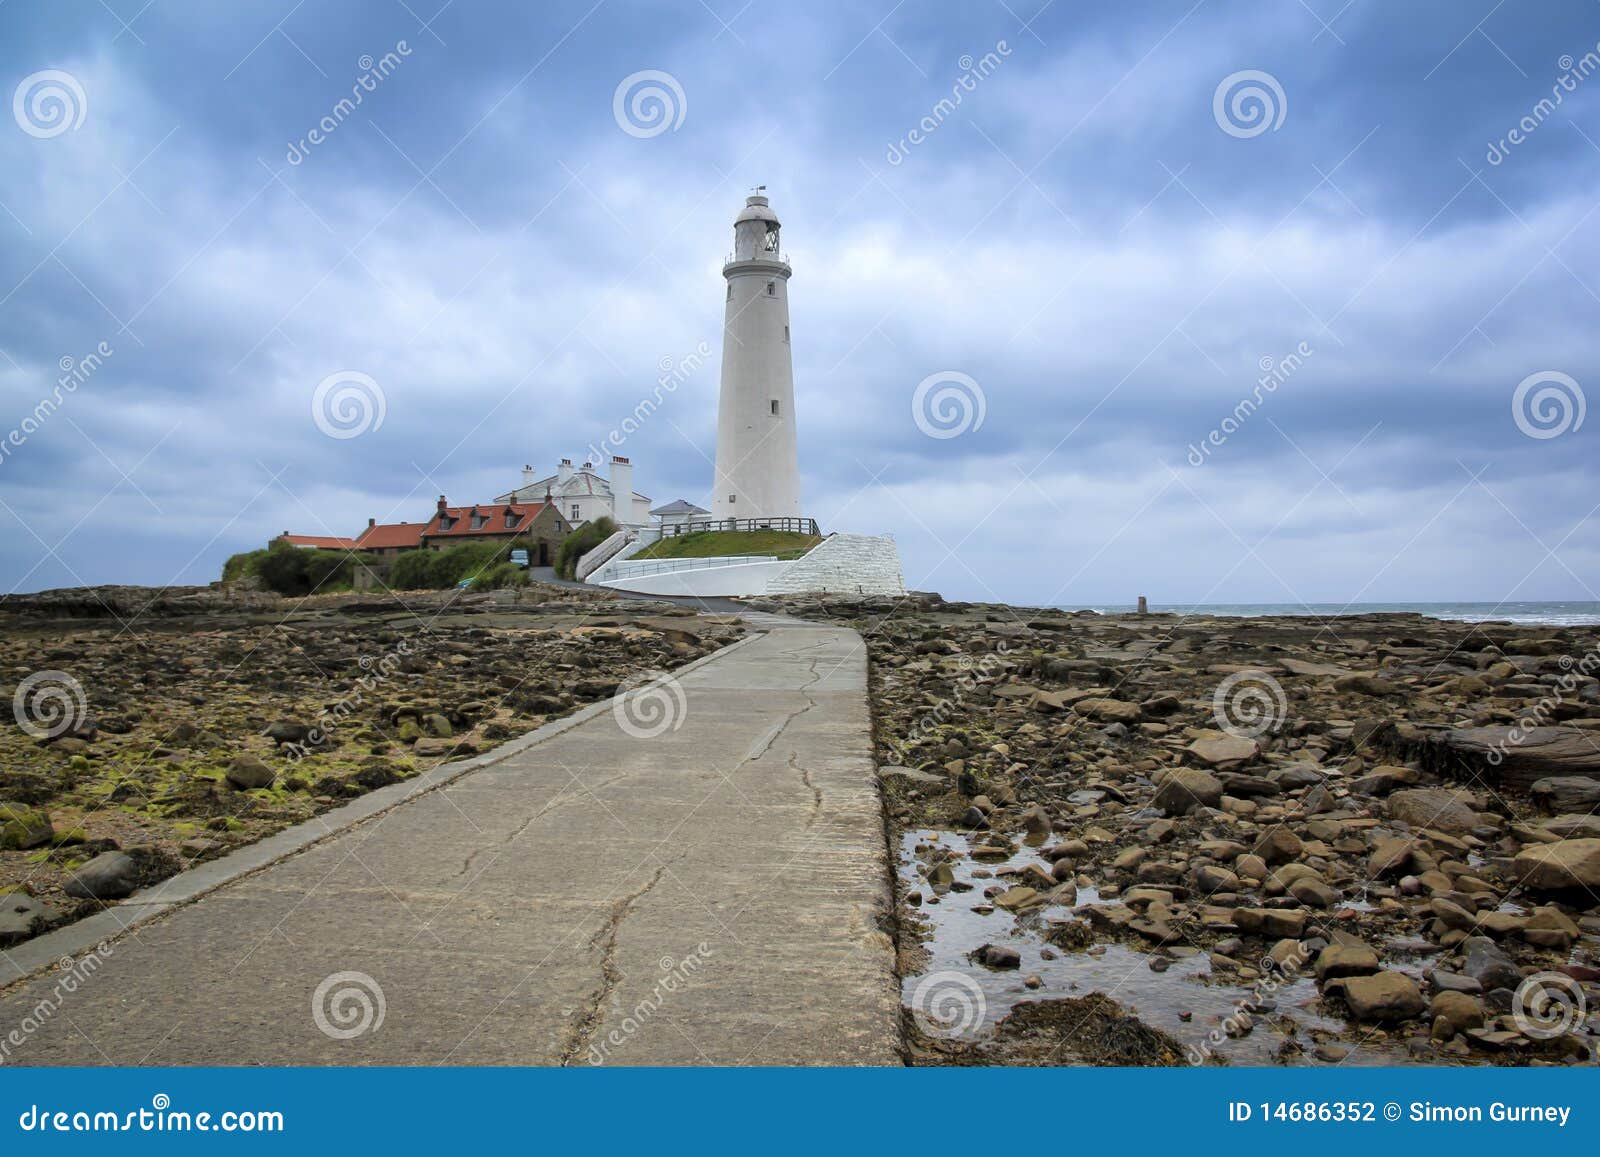 st marys lighthouse whitley bay england